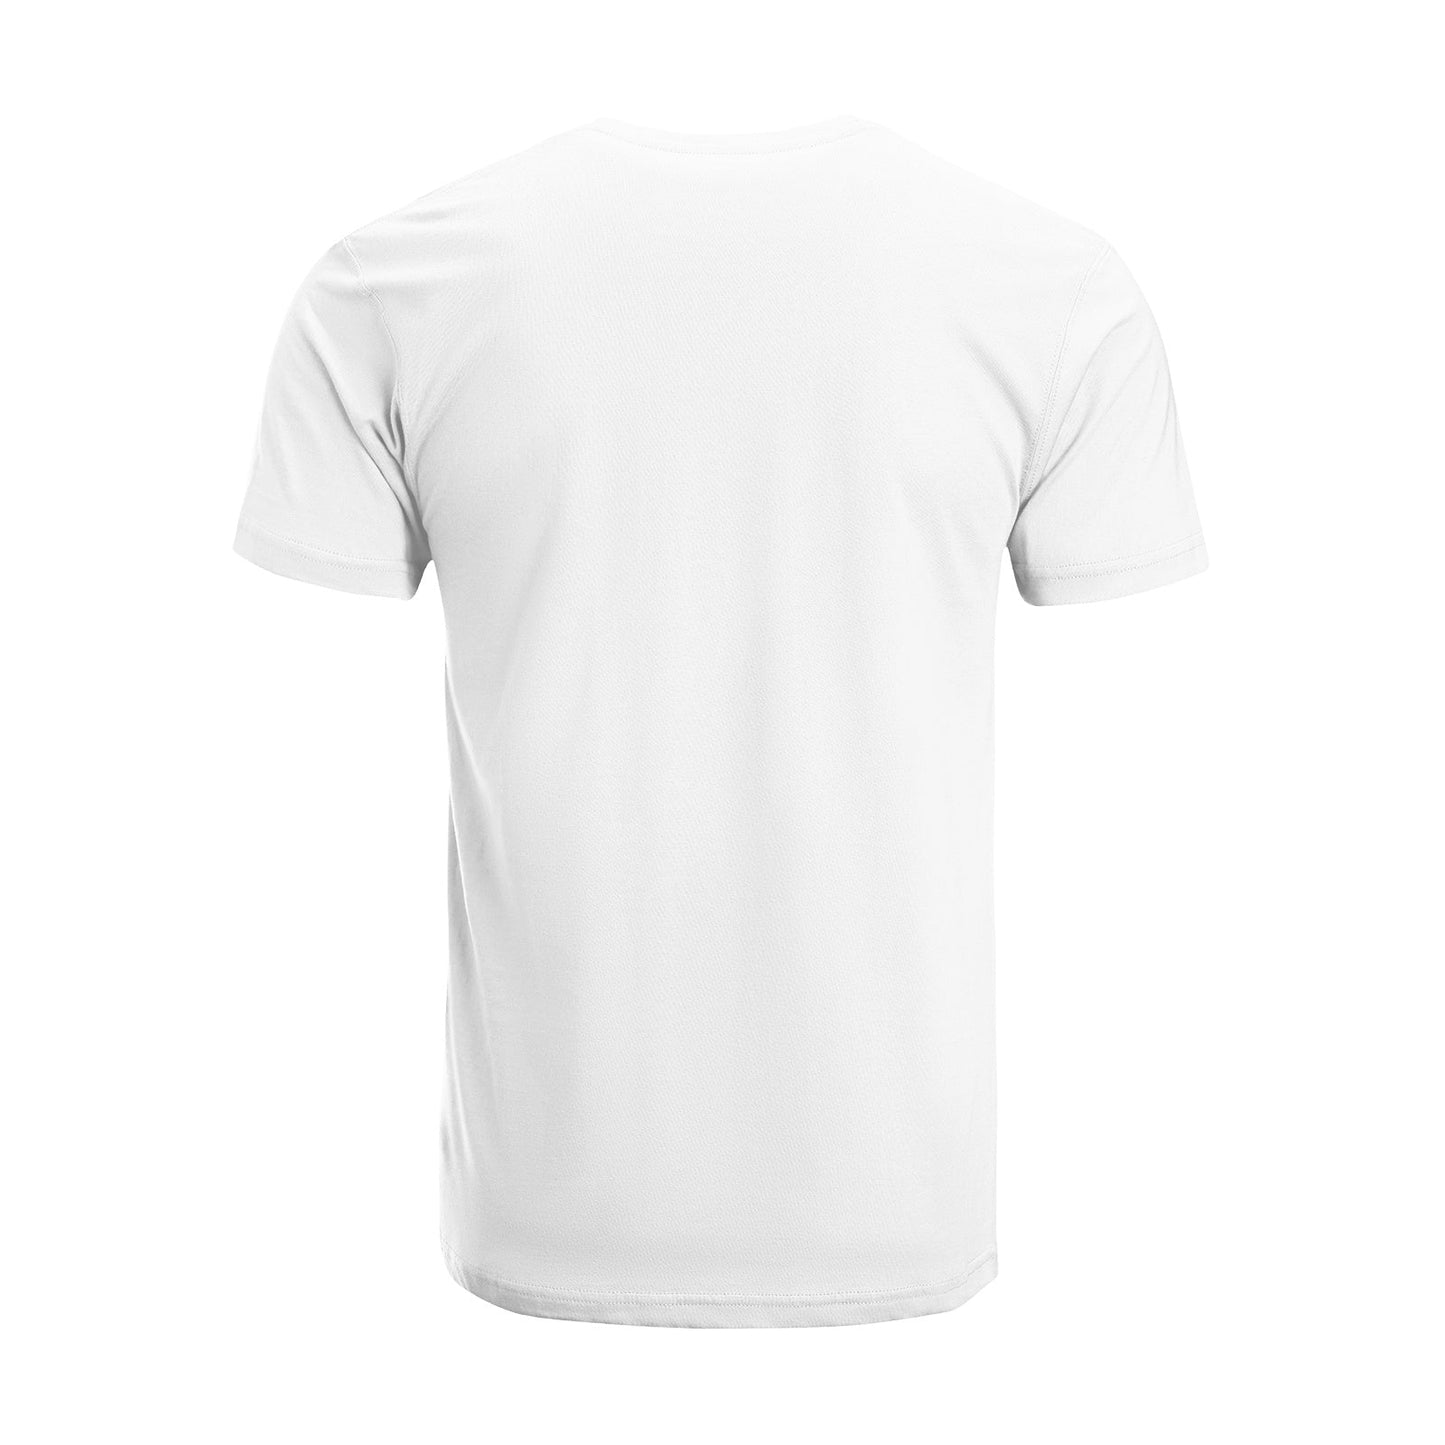 Unisex Short Sleeve Crew Neck Cotton Jersey T-Shirt TRUCK 34